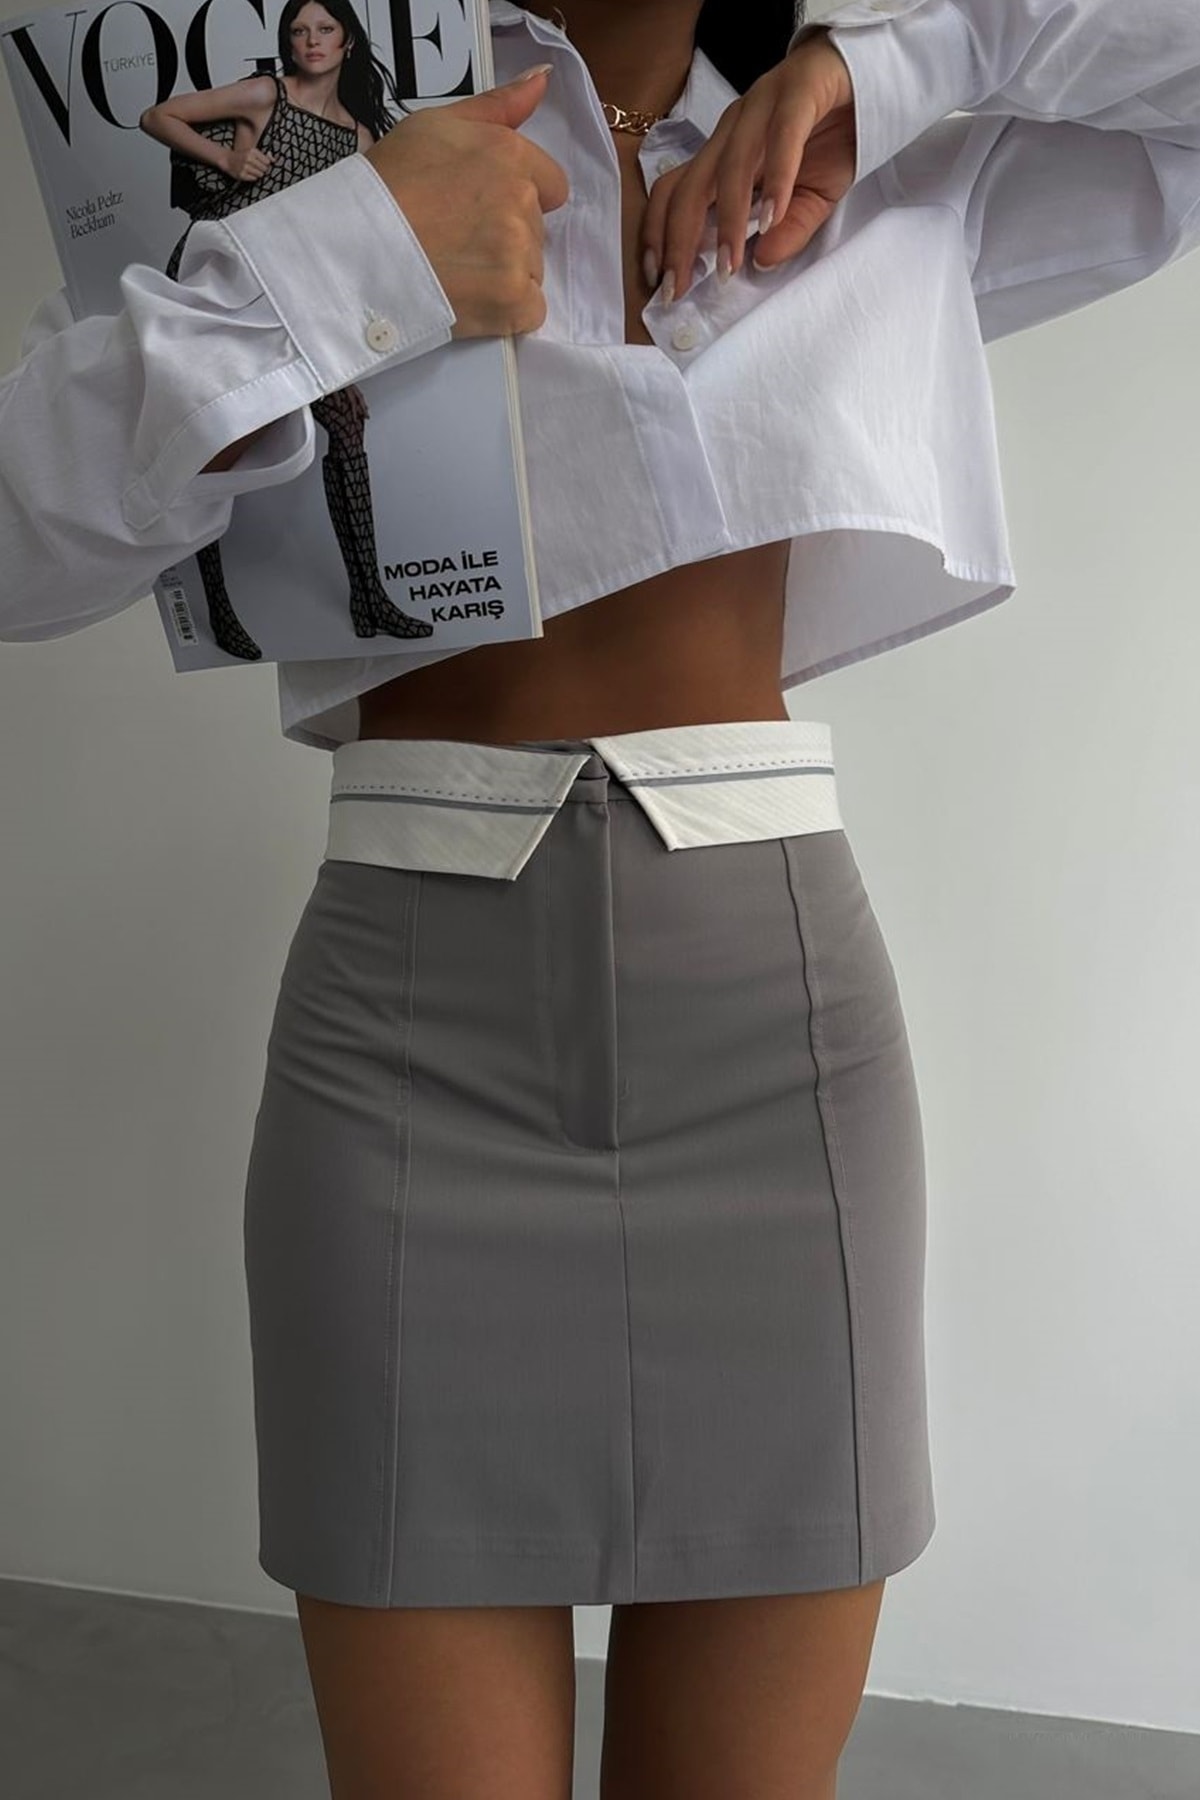 vuvutasarım Kadın Bel Katlama Detaylı Gri Mini Etek Grey Mini Skirt 23s02003